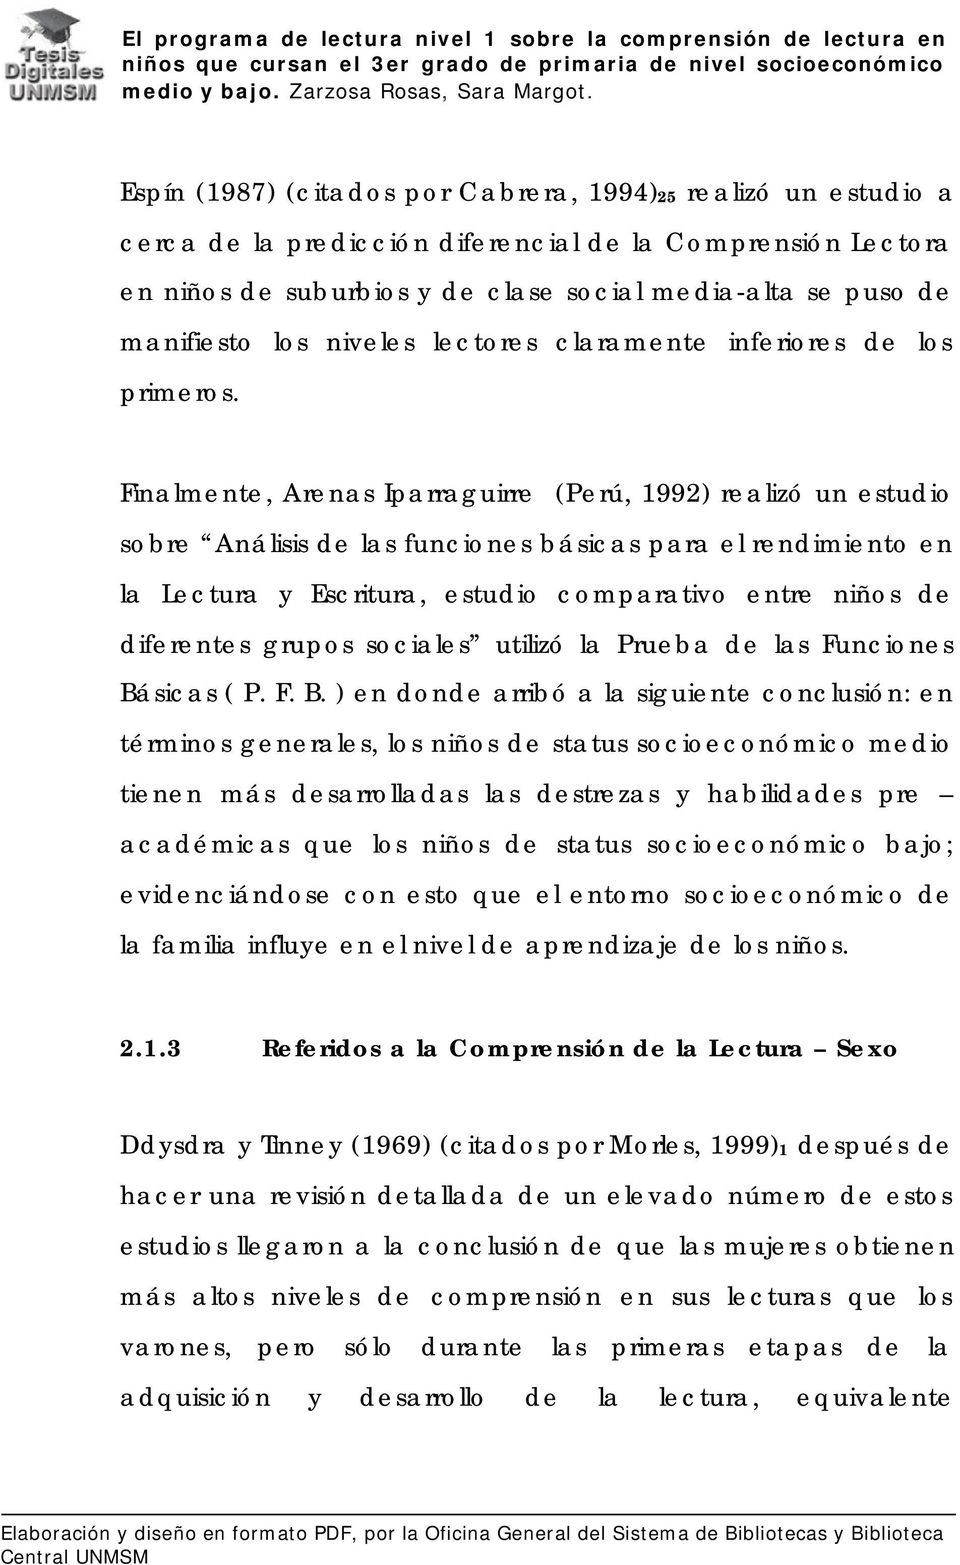 Finalmente, Arenas Iparraguirre (Perú, 1992) realizó un estudio sobre Análisis de las funciones básicas para el rendimiento en la Lectura y Escritura, estudio comparativo entre niños de diferentes